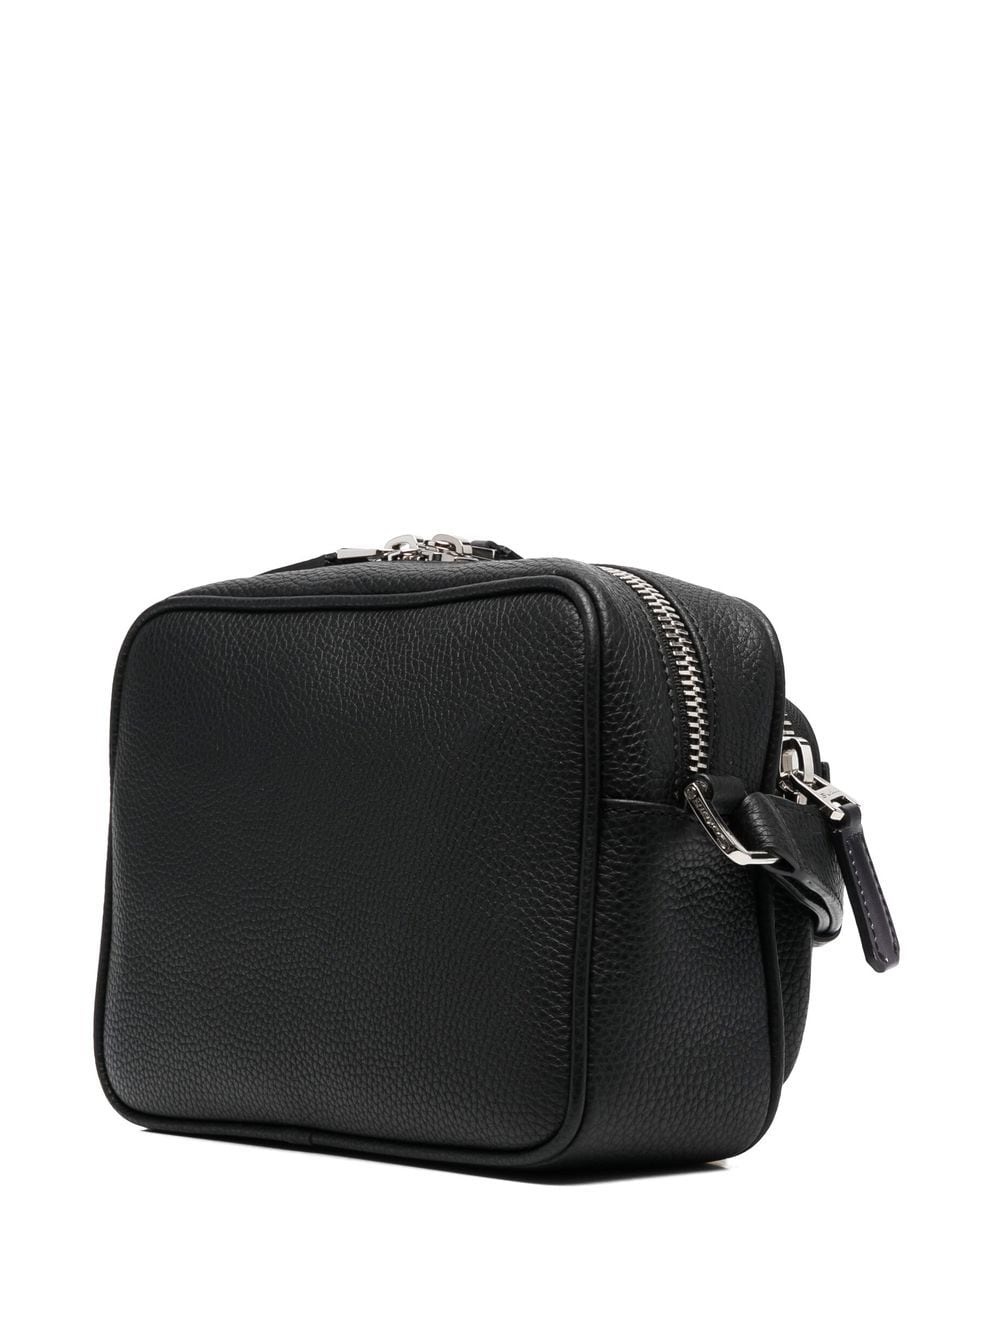 calf leather shoulder bag - 3